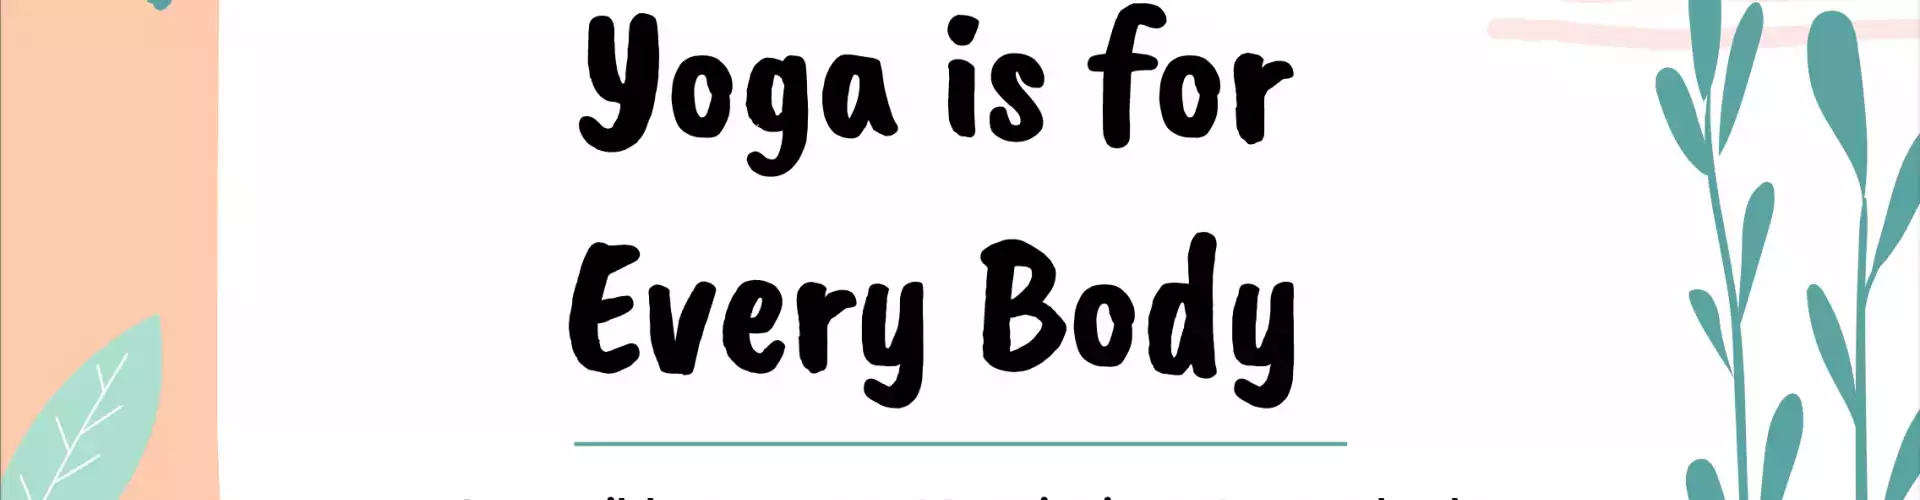 Le yoga est pour chaque corps : un mouvement accessible pour revigorer votre corps, votre cœur et votre esprit